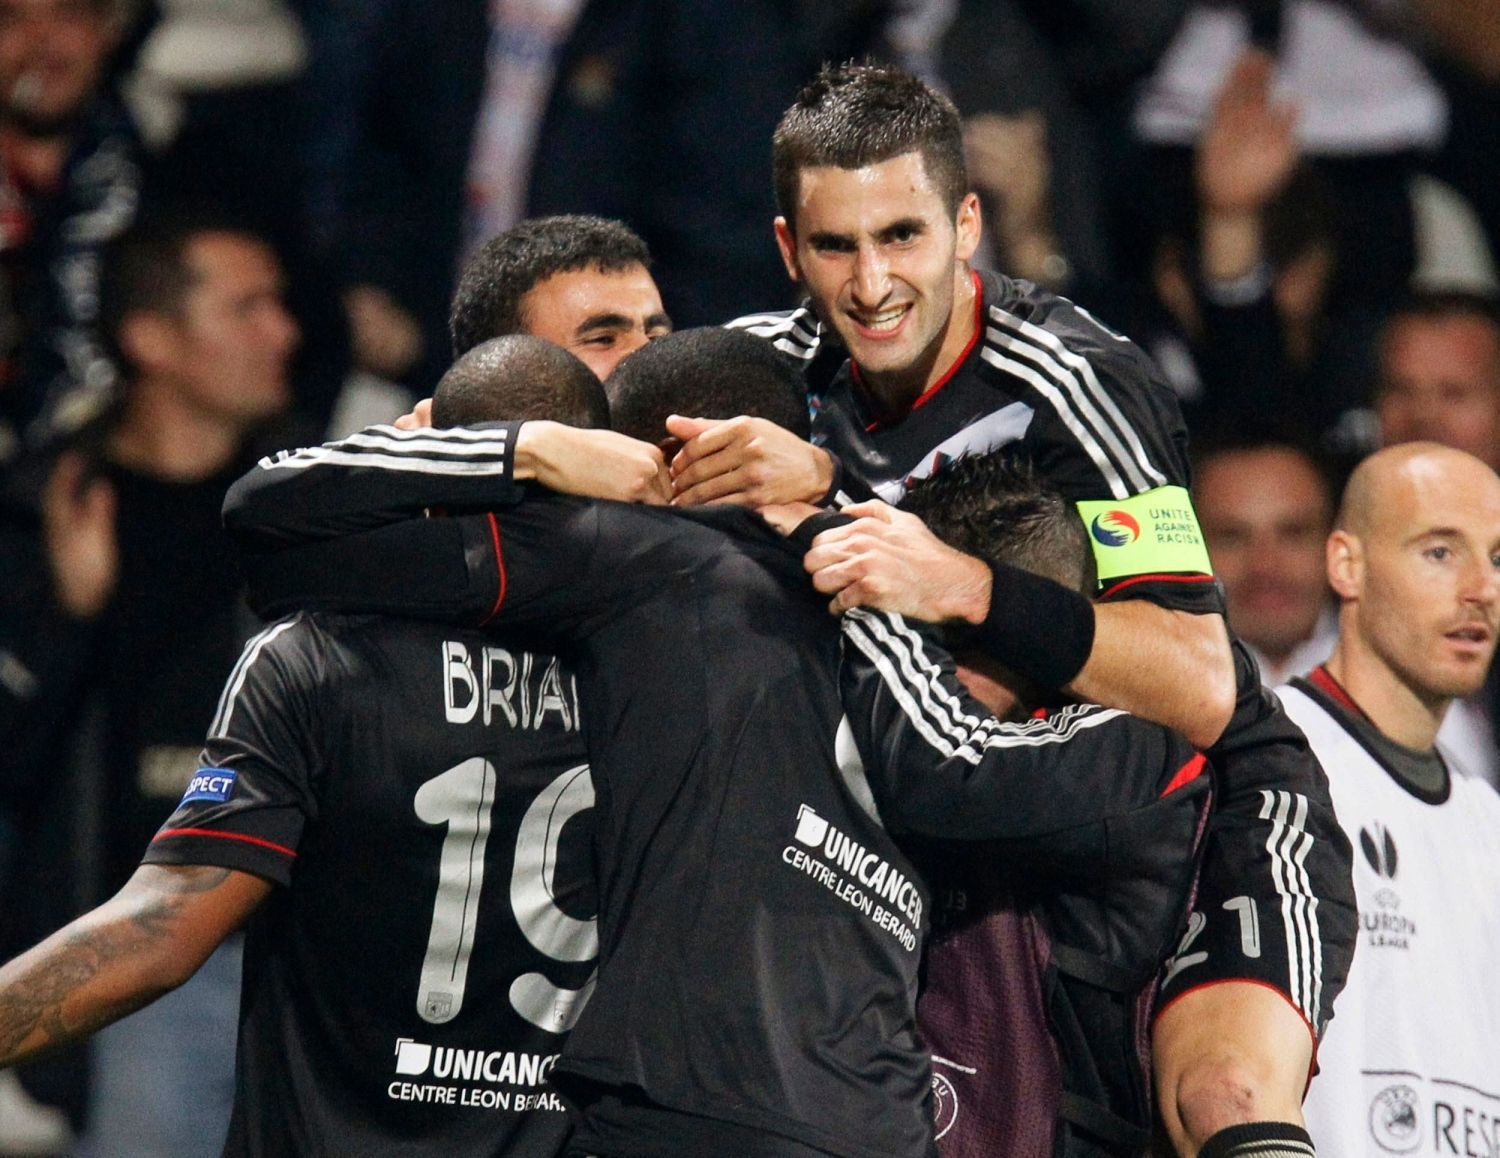 Fotbalisté Olympique Lyon slaví gól Jimmyho Brianda (vlevo) proti Athleticu Bilbao v utkání Evropské ligy 2012/13.